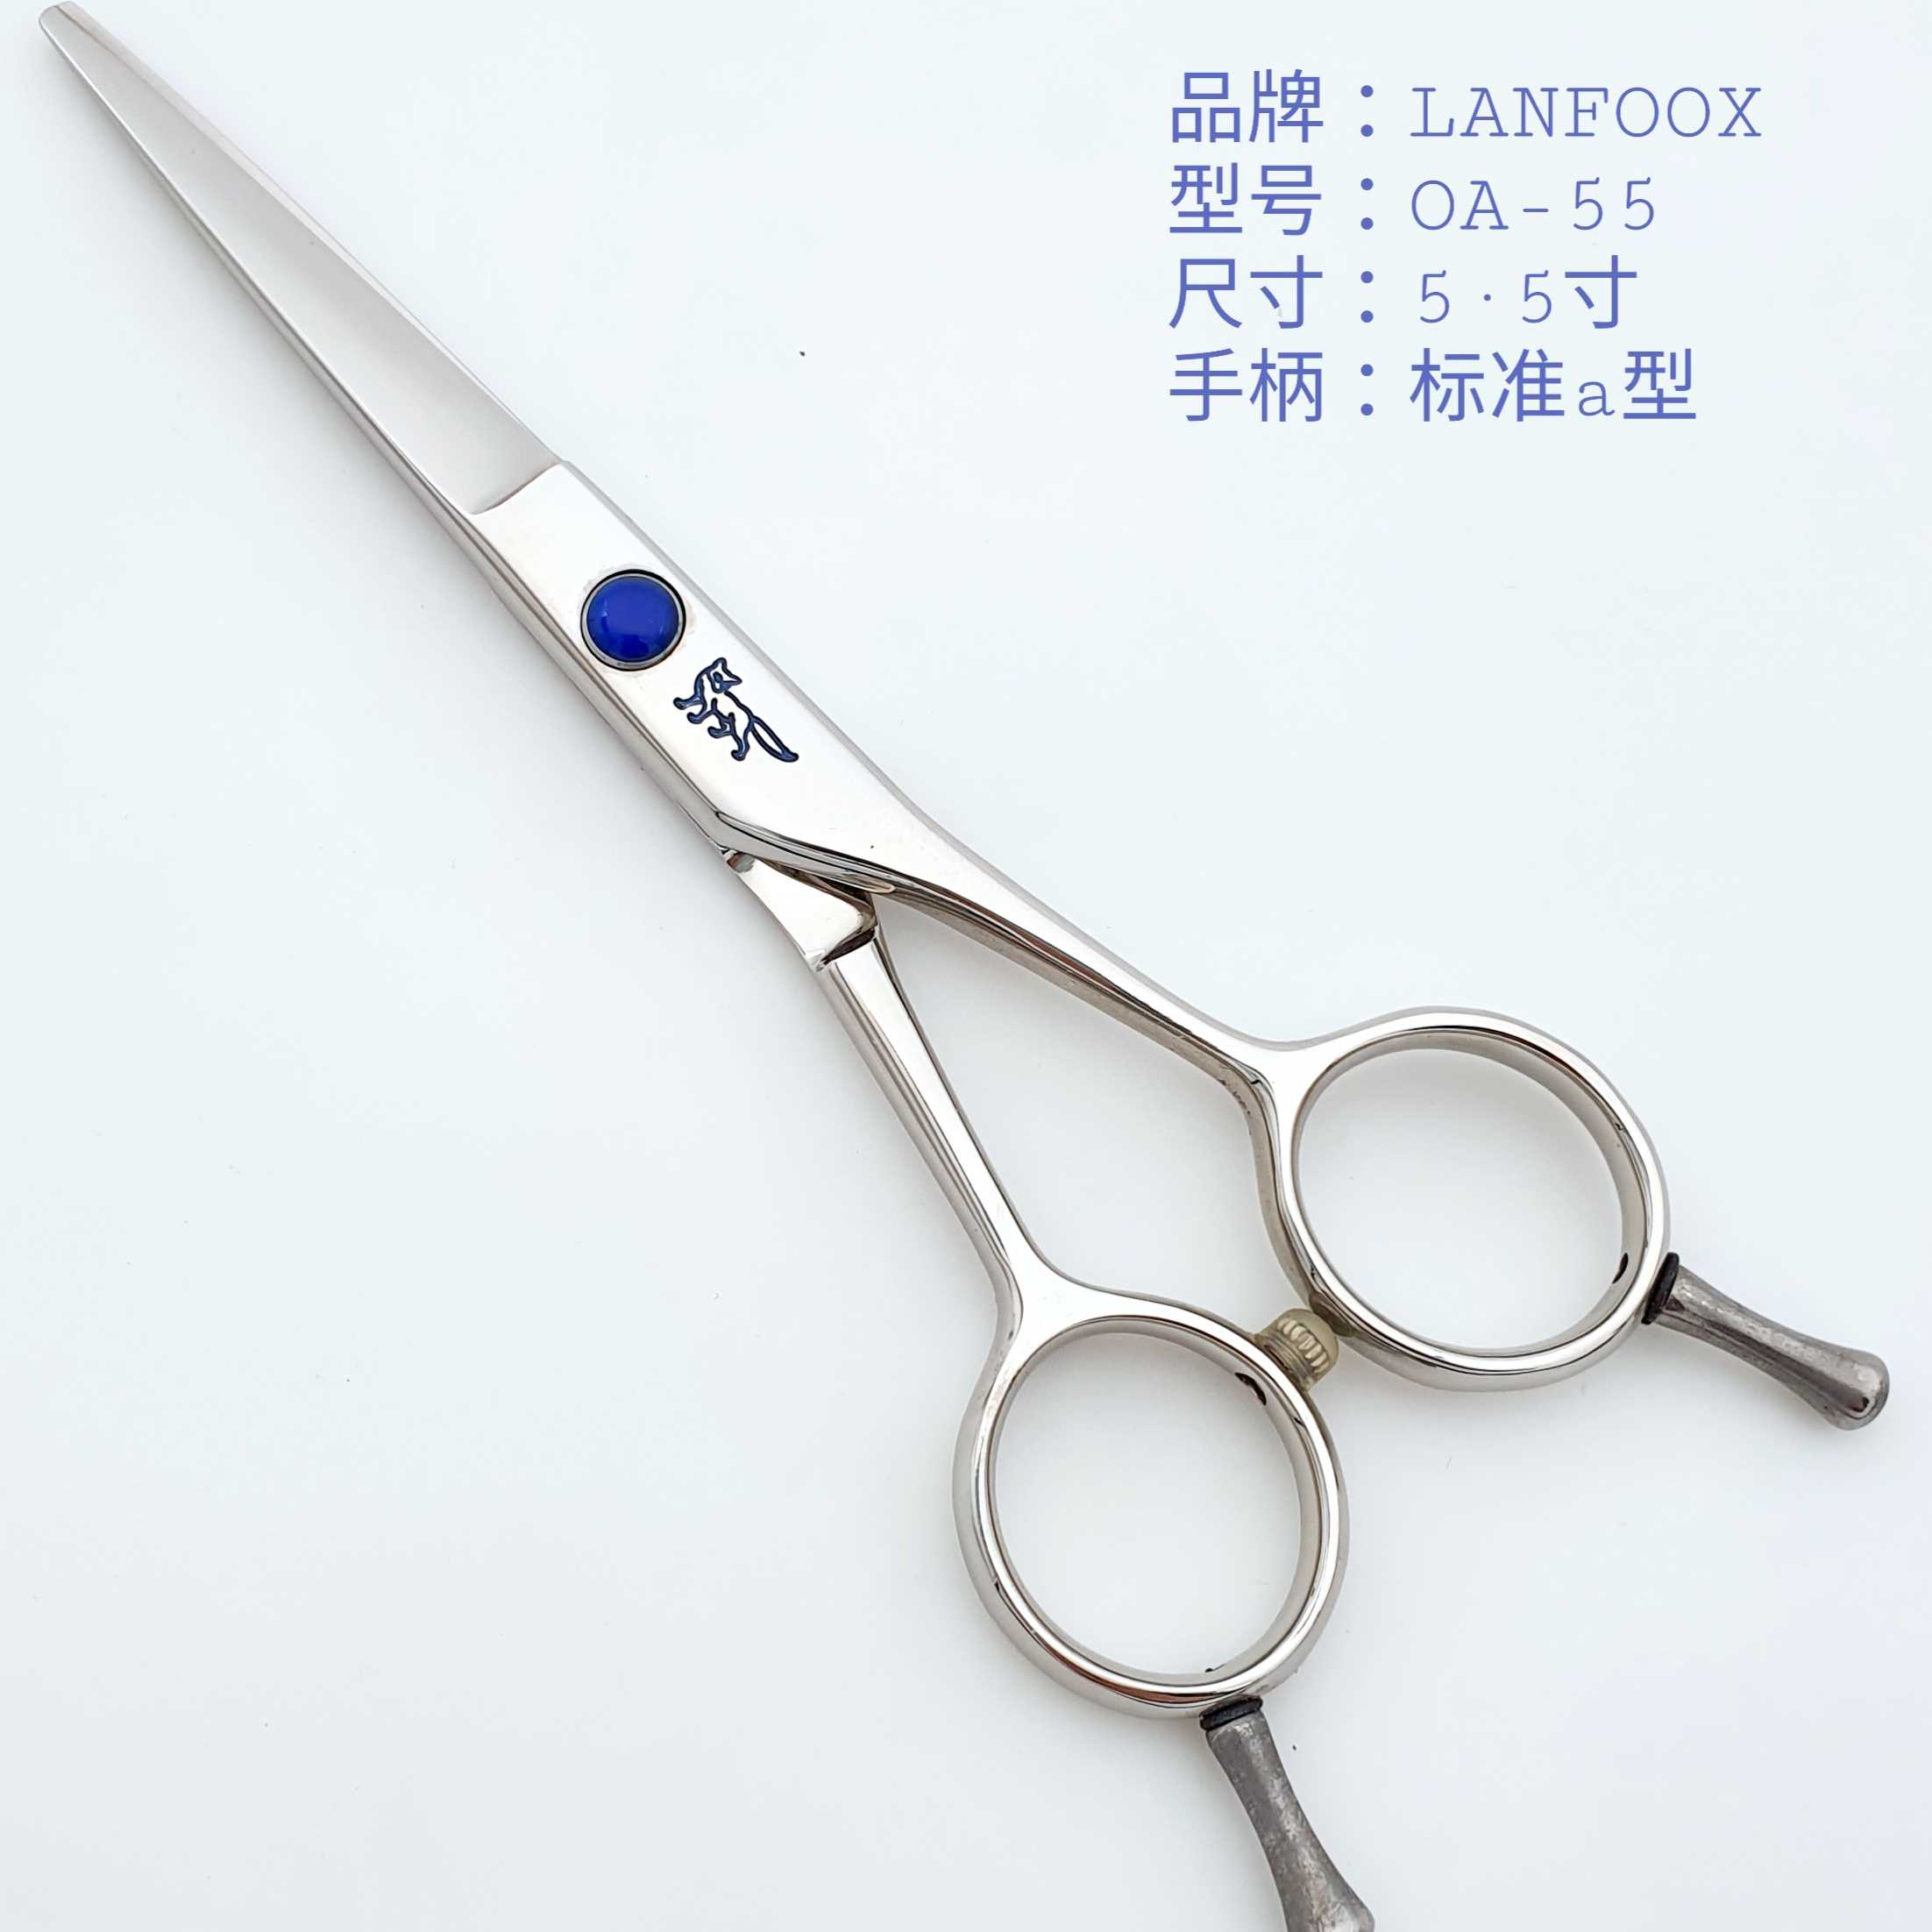 美发剪刀LANFOOX 蓝狐平剪OA55 60左右手通用剪理发师剪刀